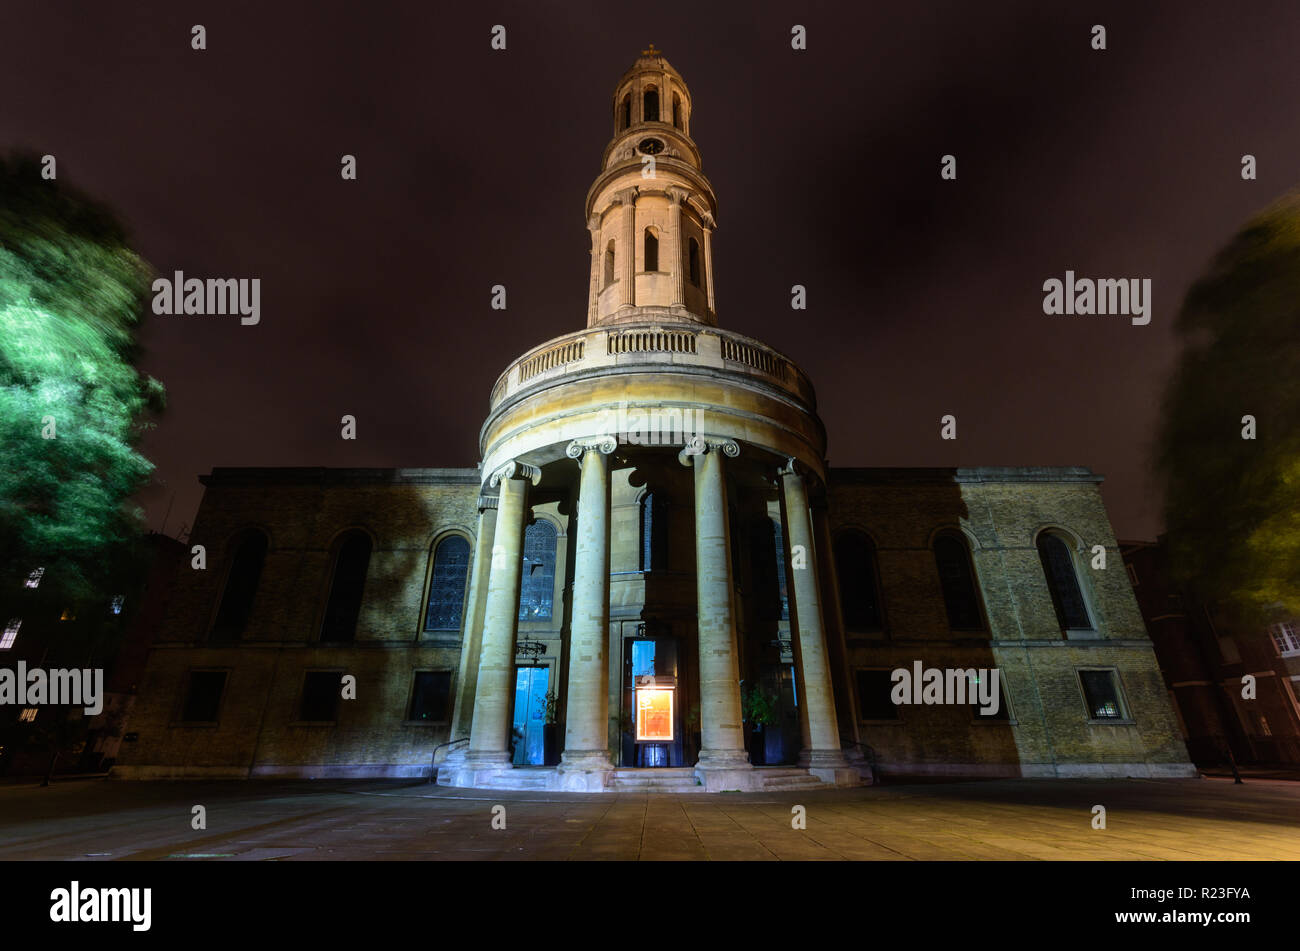 Londres, Angleterre, Royaume-Uni - Octobre 12, 2018 : La tour et la face sud de l'église St Mary est éclairé la nuit à Bryanston Square dans le Marylebone neighborho Banque D'Images